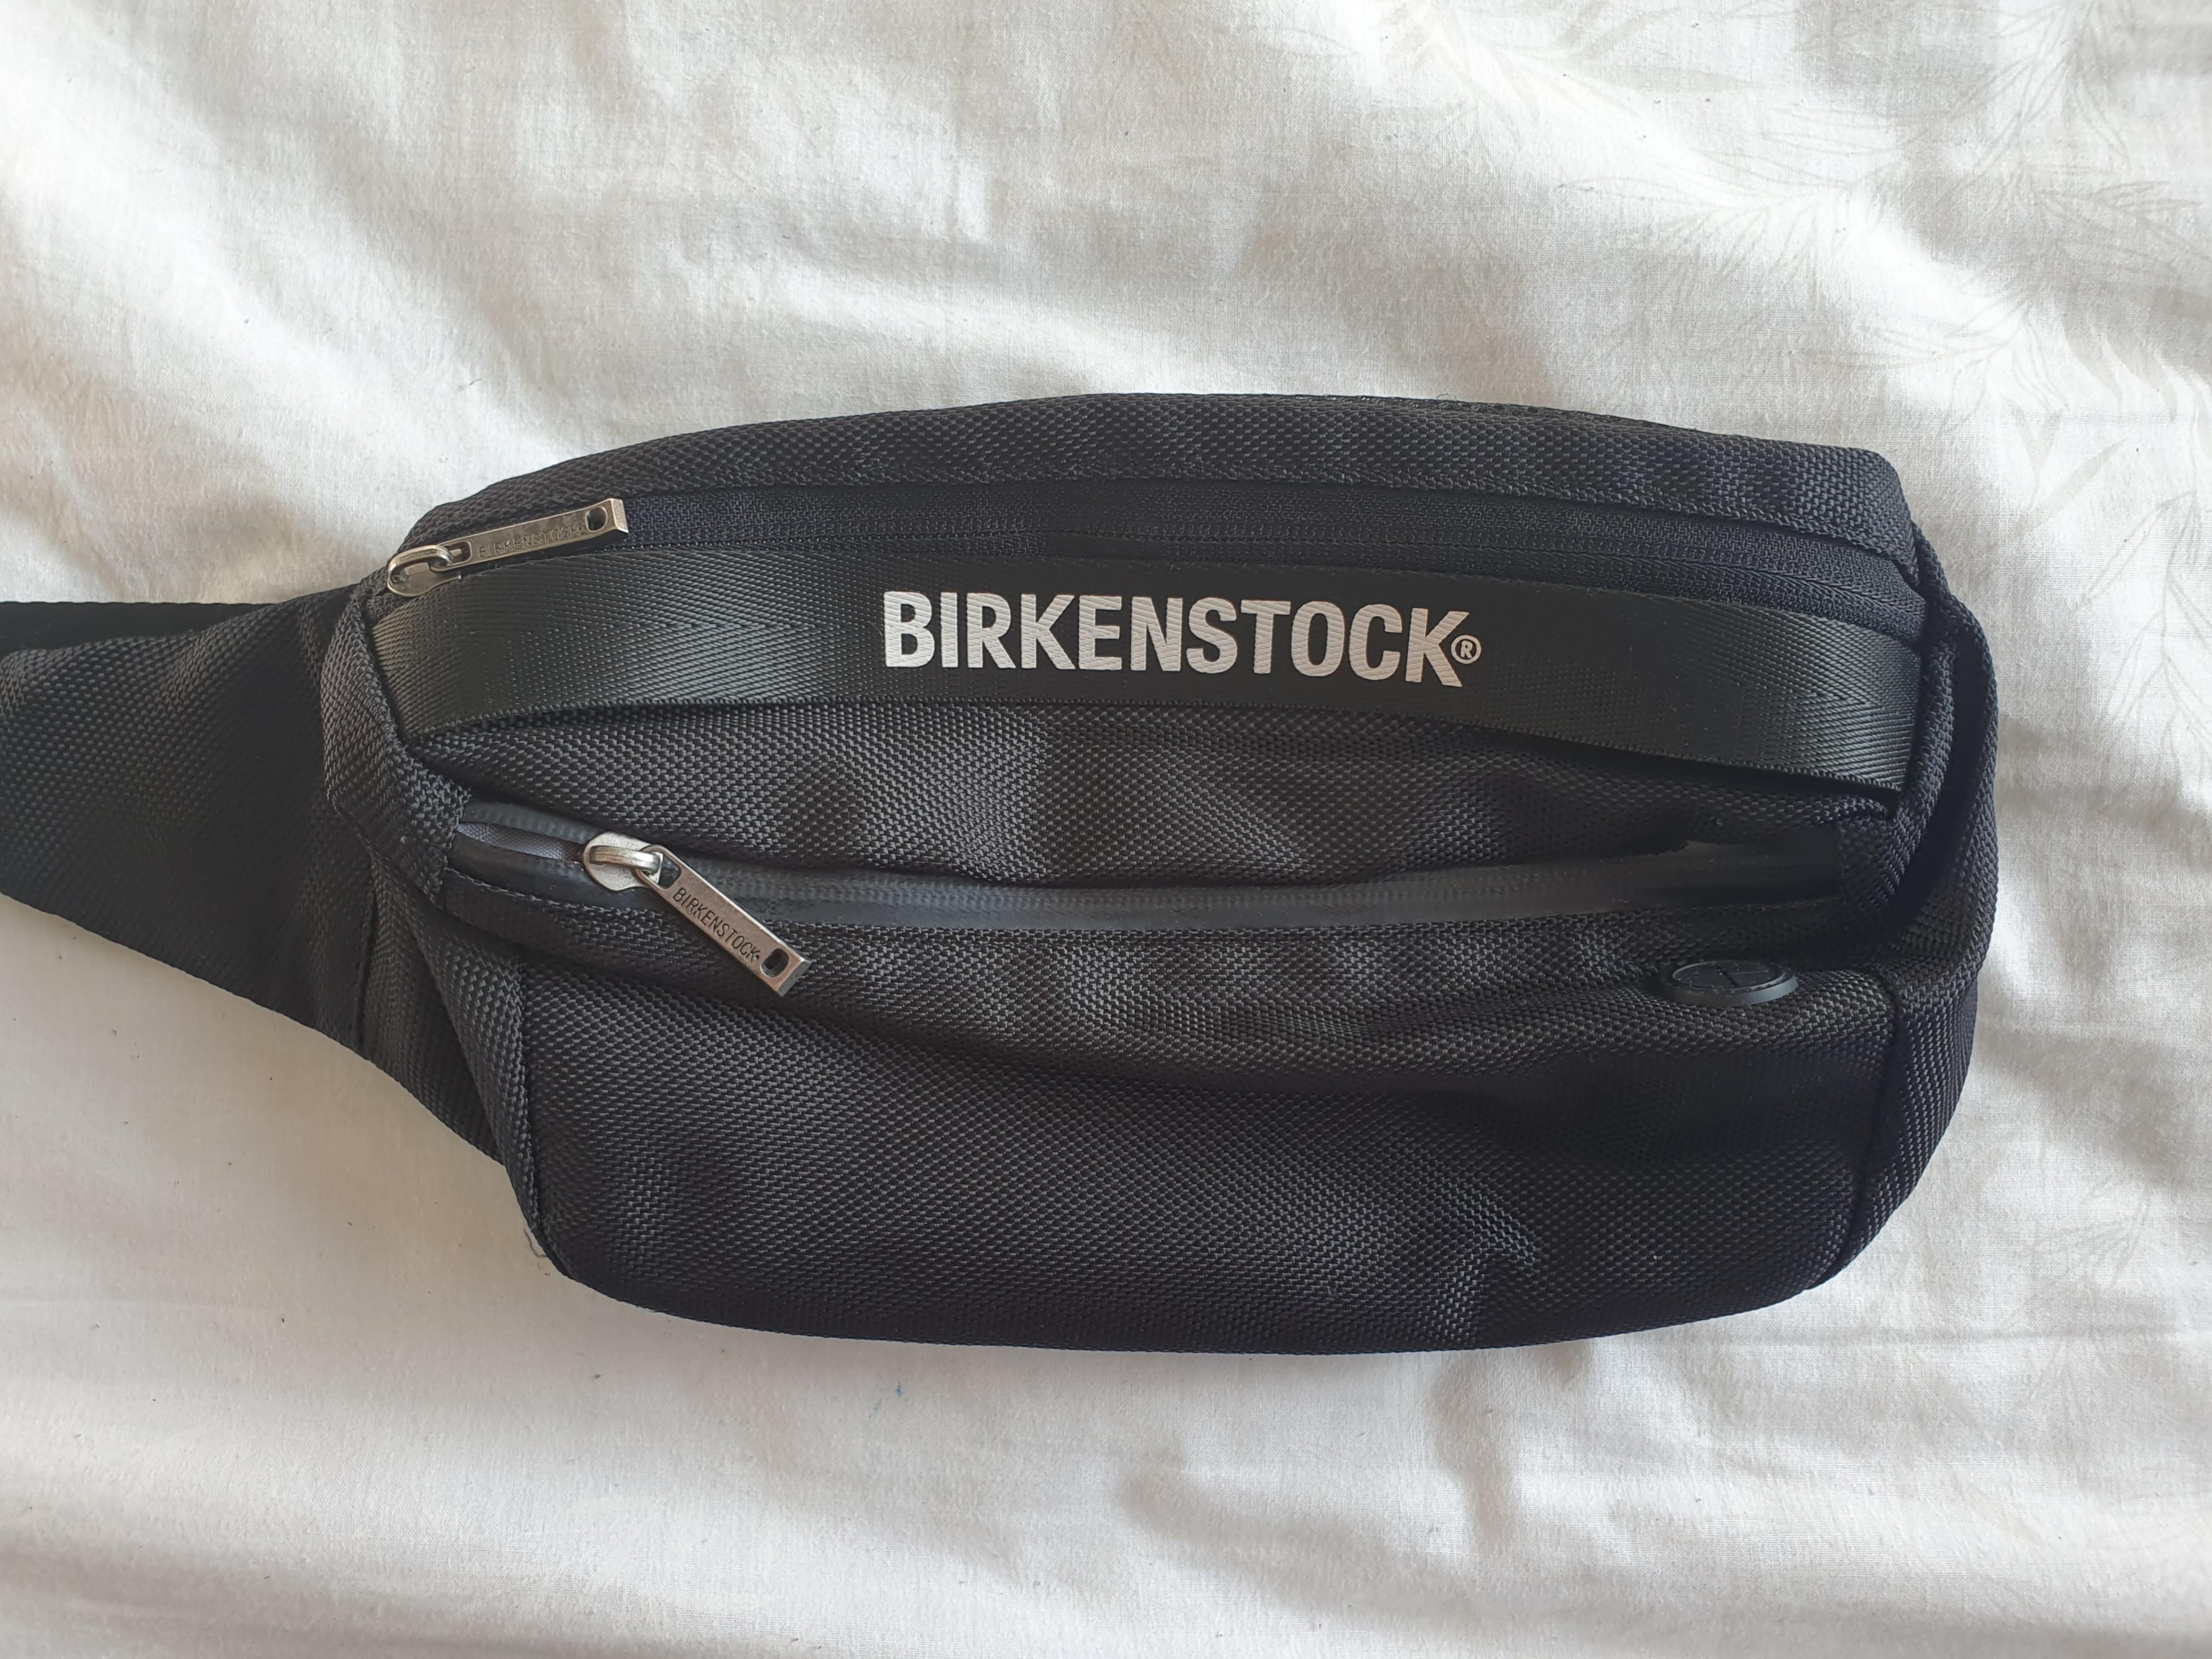 birkenstock bag price